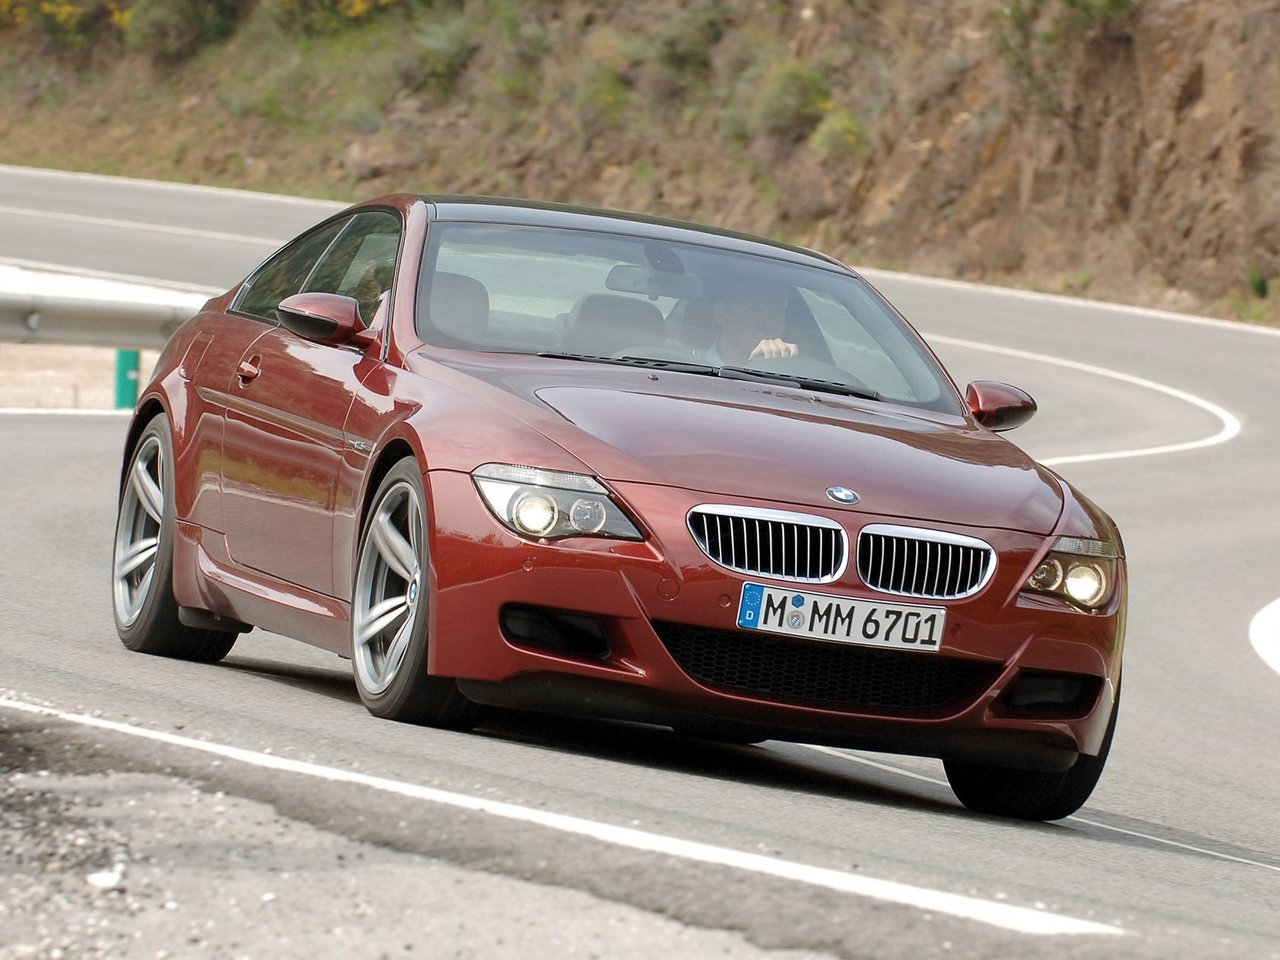 Расход газа одной комплектации купе BMW M6. Разница стоимости заправки газом и бензином. Автономный пробег до и после установки ГБО.